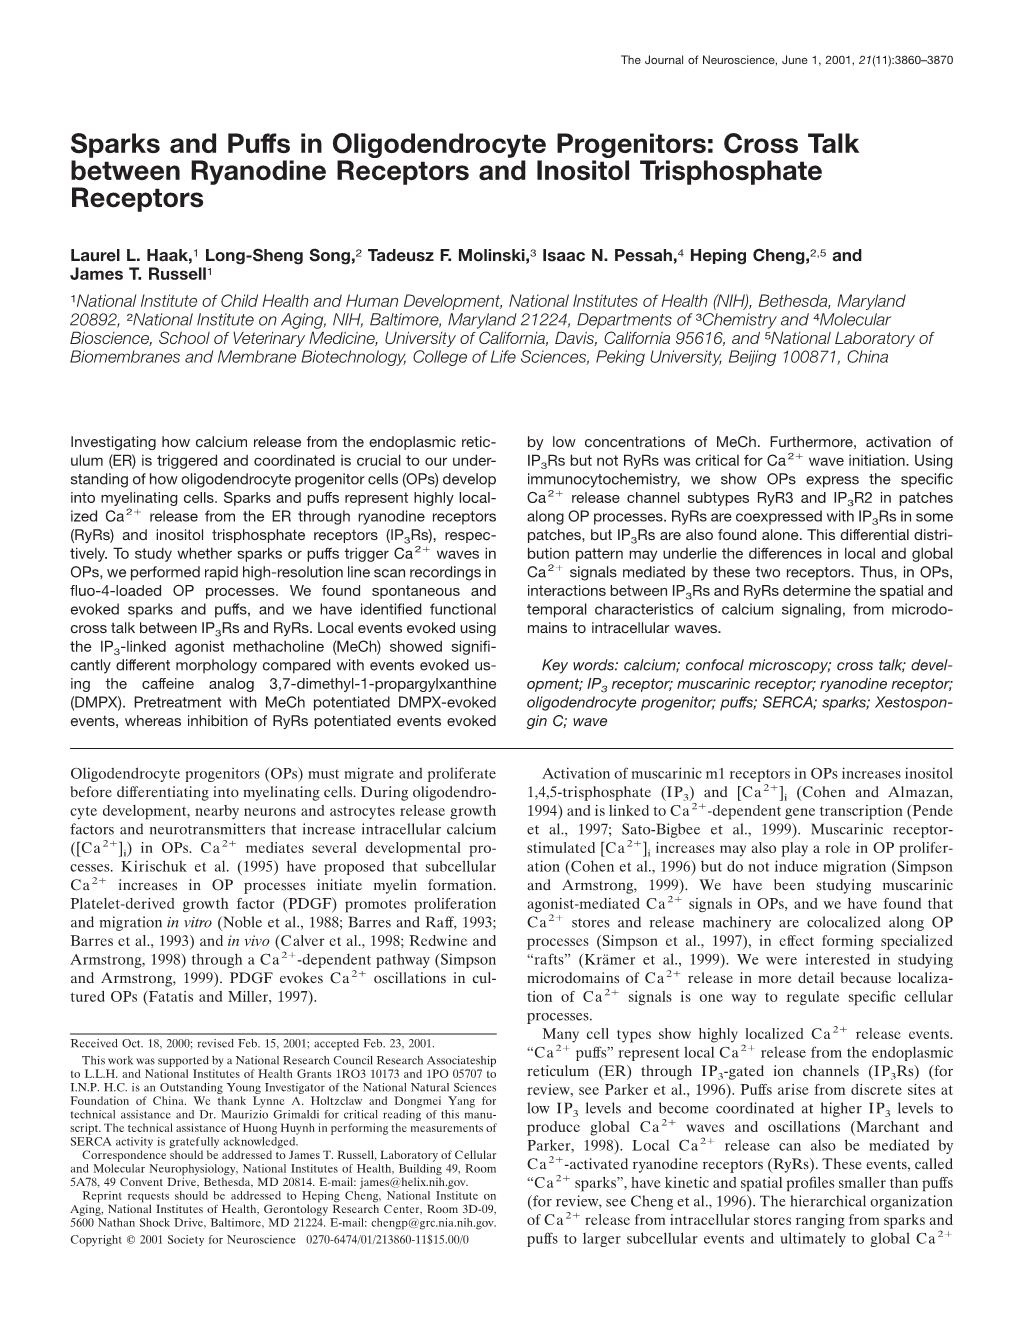 Cross Talk Between Ryanodine Receptors and Inositol Trisphosphate Receptors